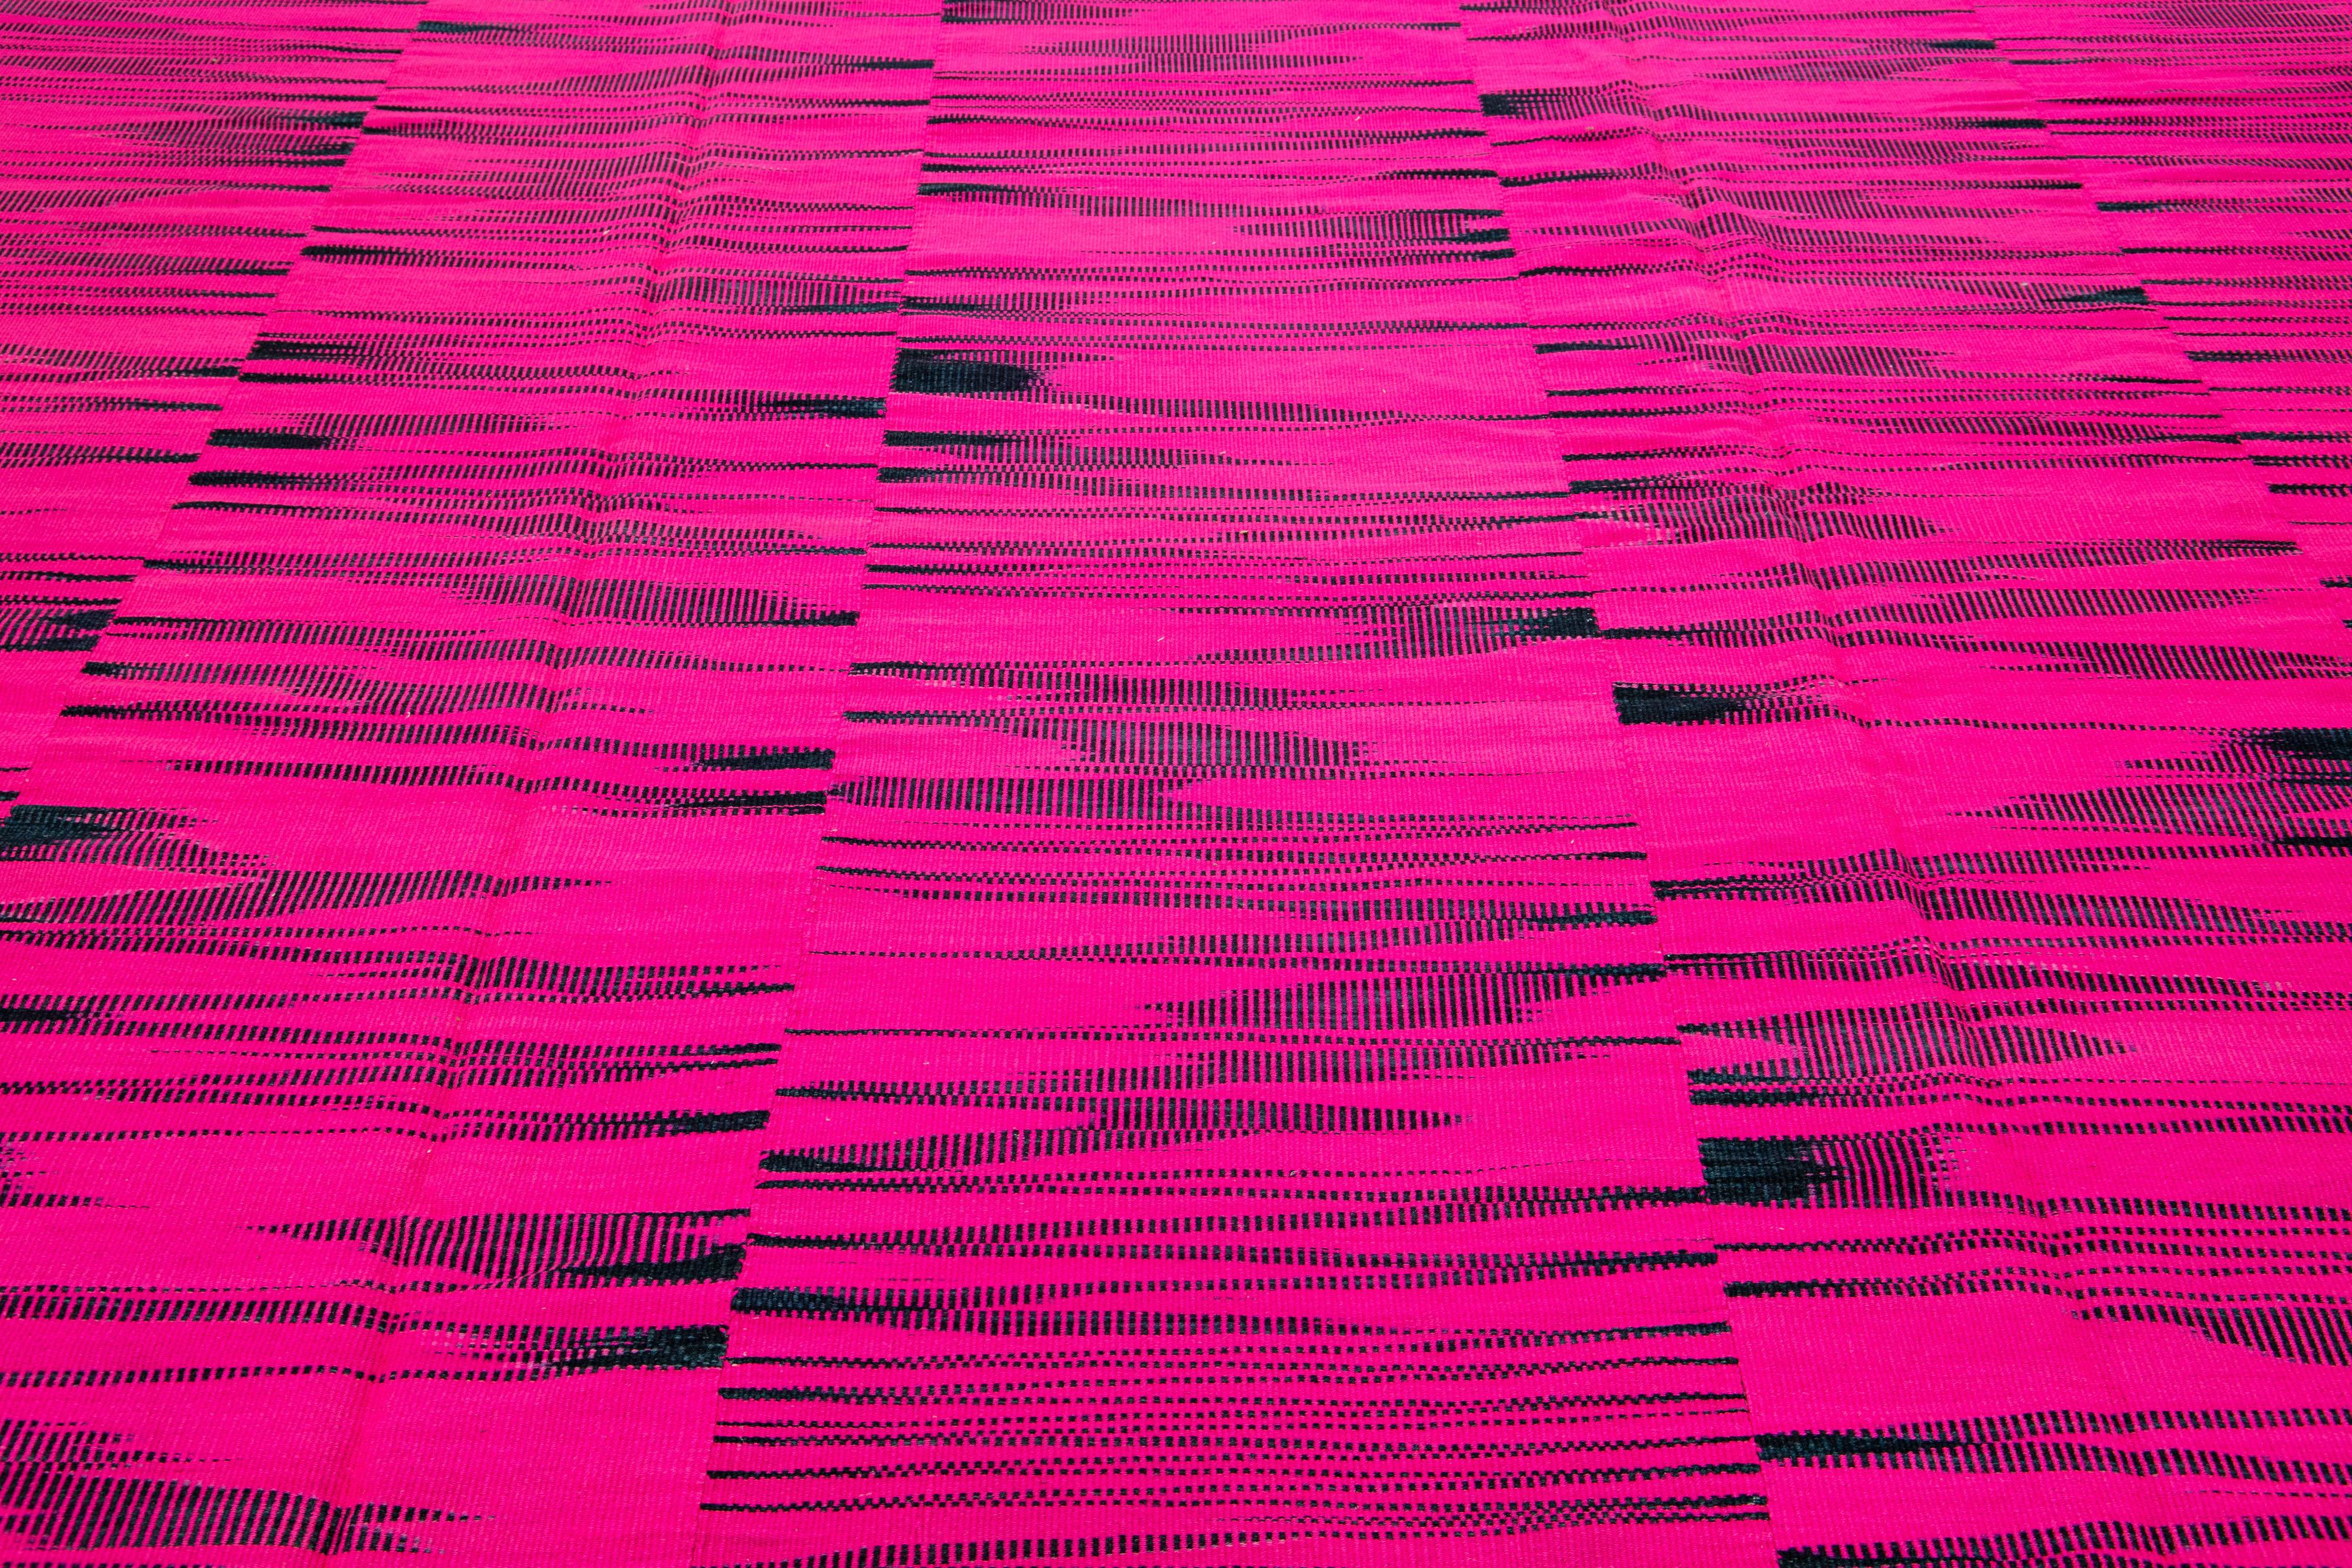 Dieser zeitgenössische türkische Kelimteppich, der im 21. Jahrhundert gefertigt wurde, zeichnet sich durch ein leuchtendes rosa Feld aus, das mit einem abstrakten geometrischen Muster aus ineinandergreifenden schwarzen Streifen verziert ist.

Dieser